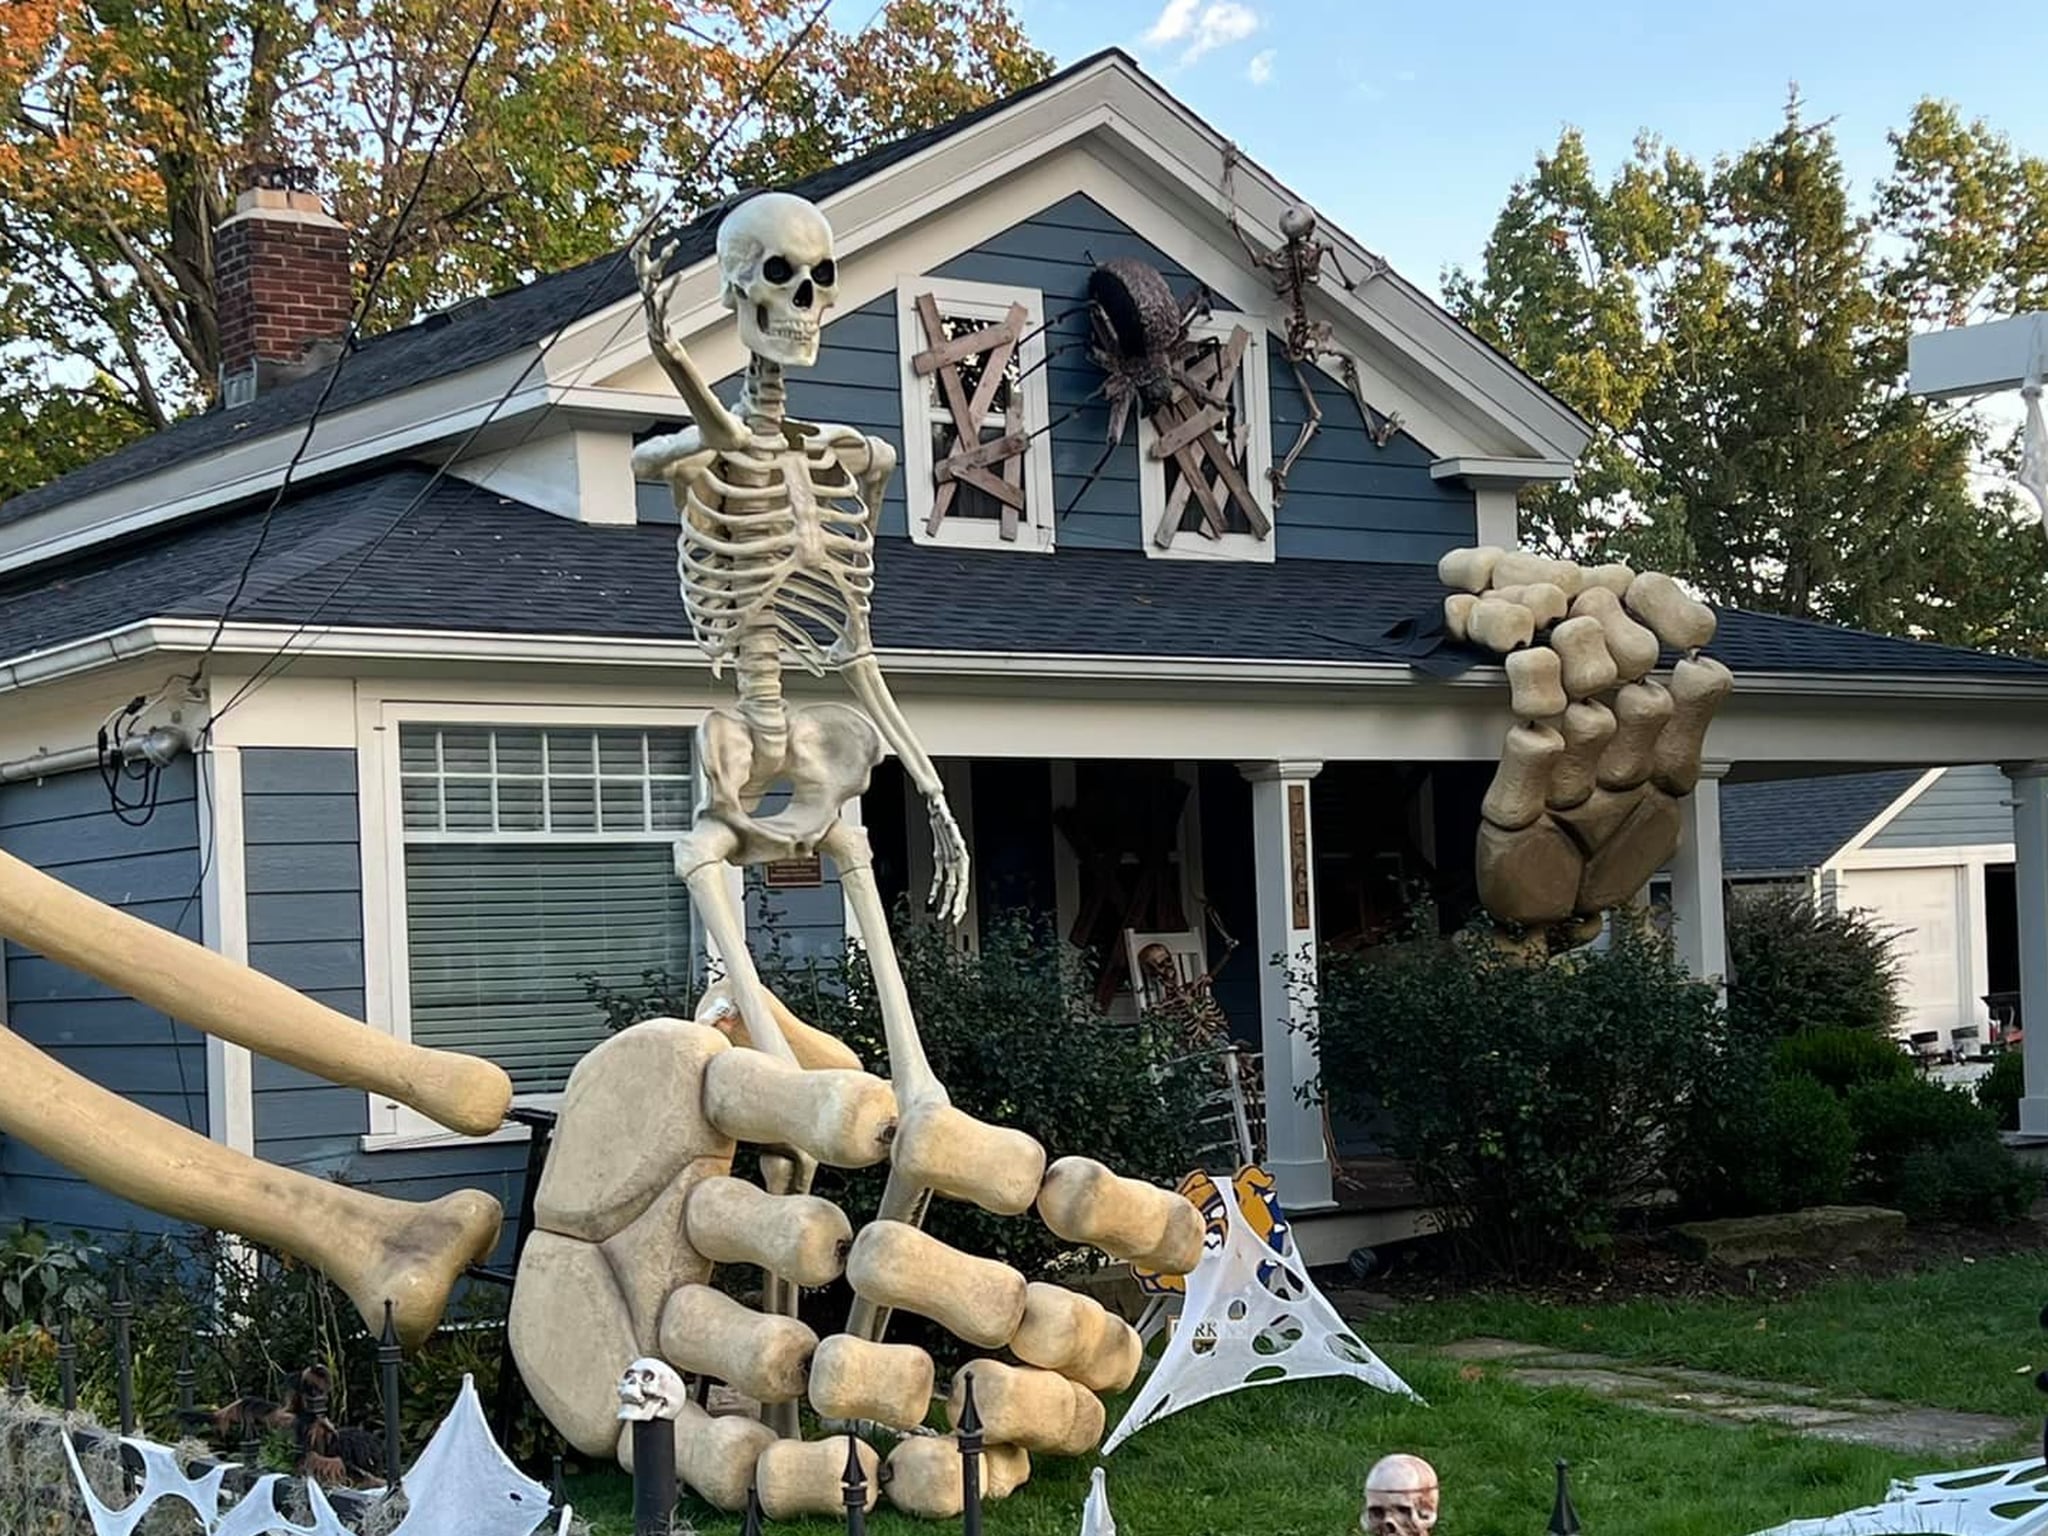 This Man's Larger-Than-Life Skeleton Display Is Going Viral | POPSUGAR ...